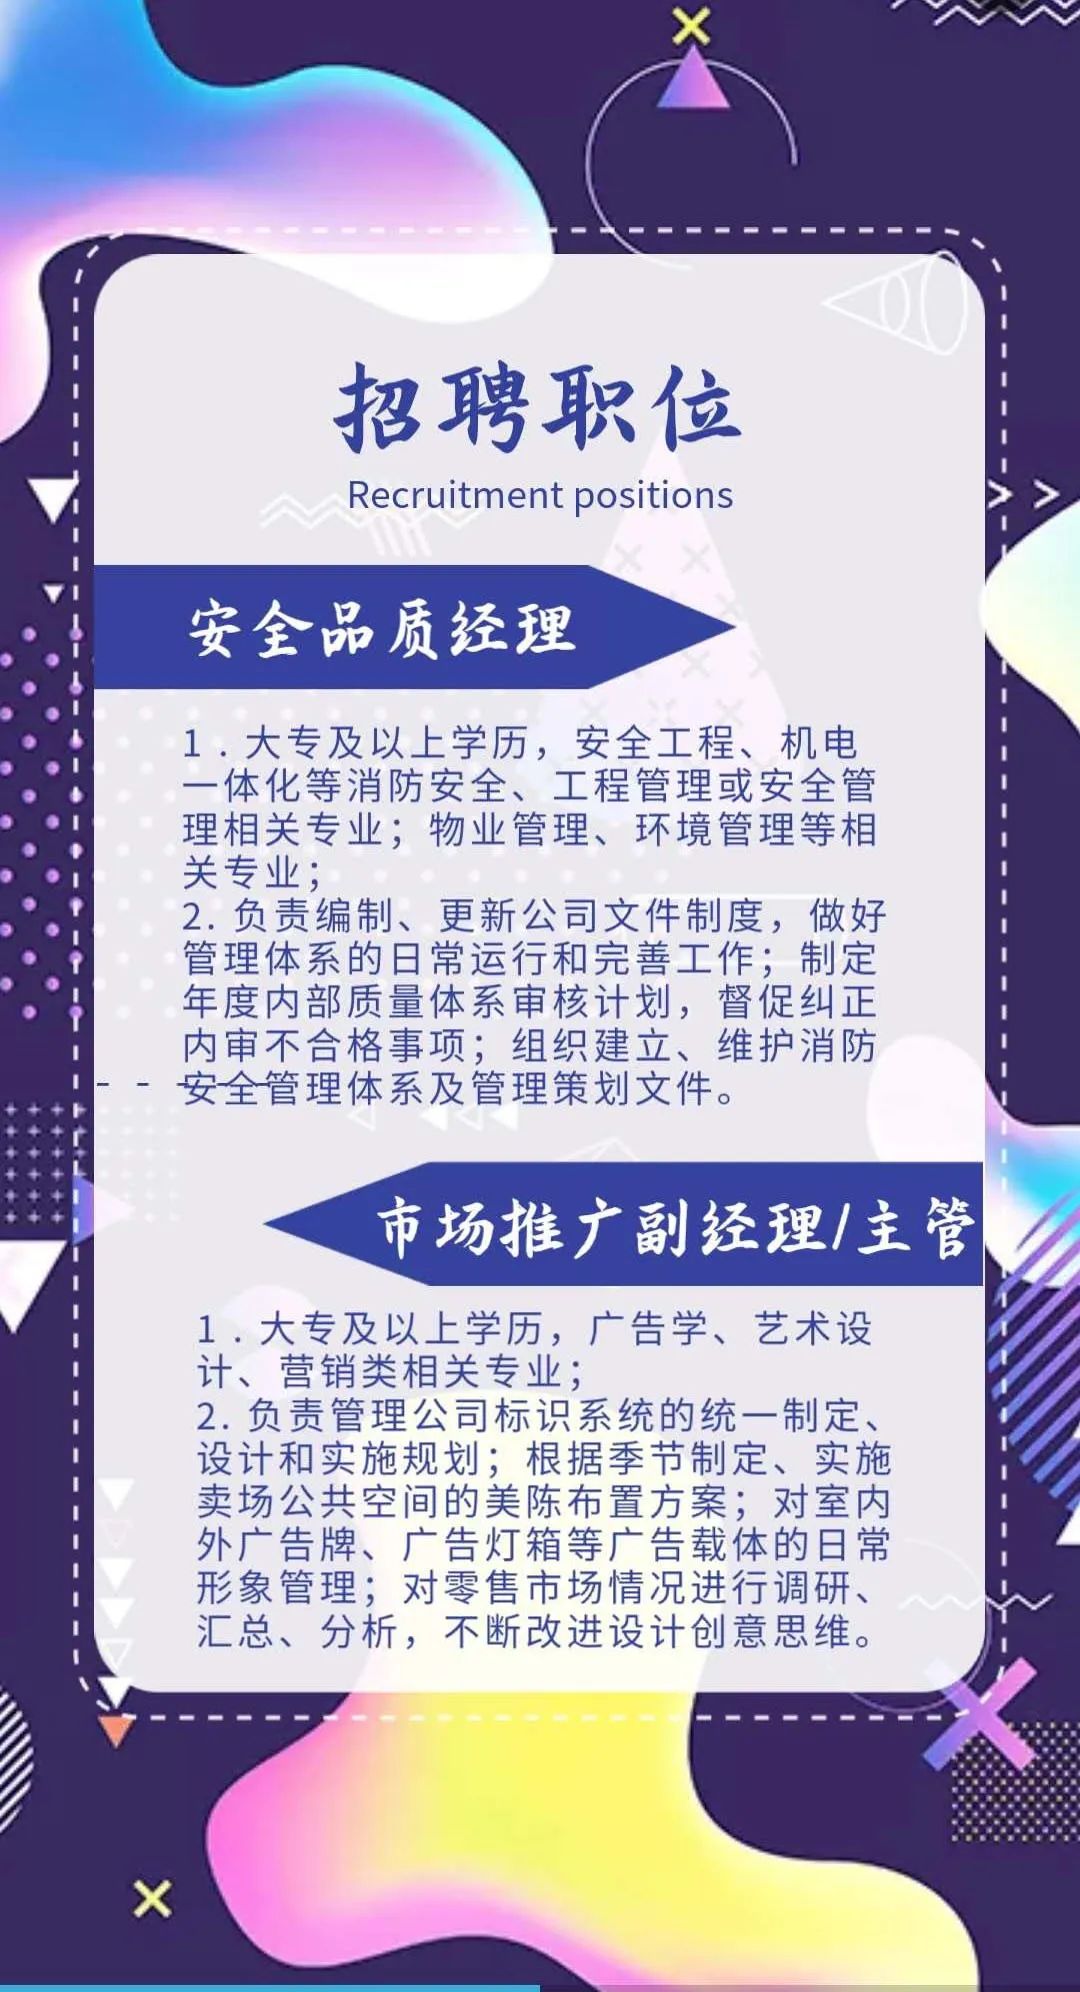 武清万达广场预计11月27日正式开业,招聘